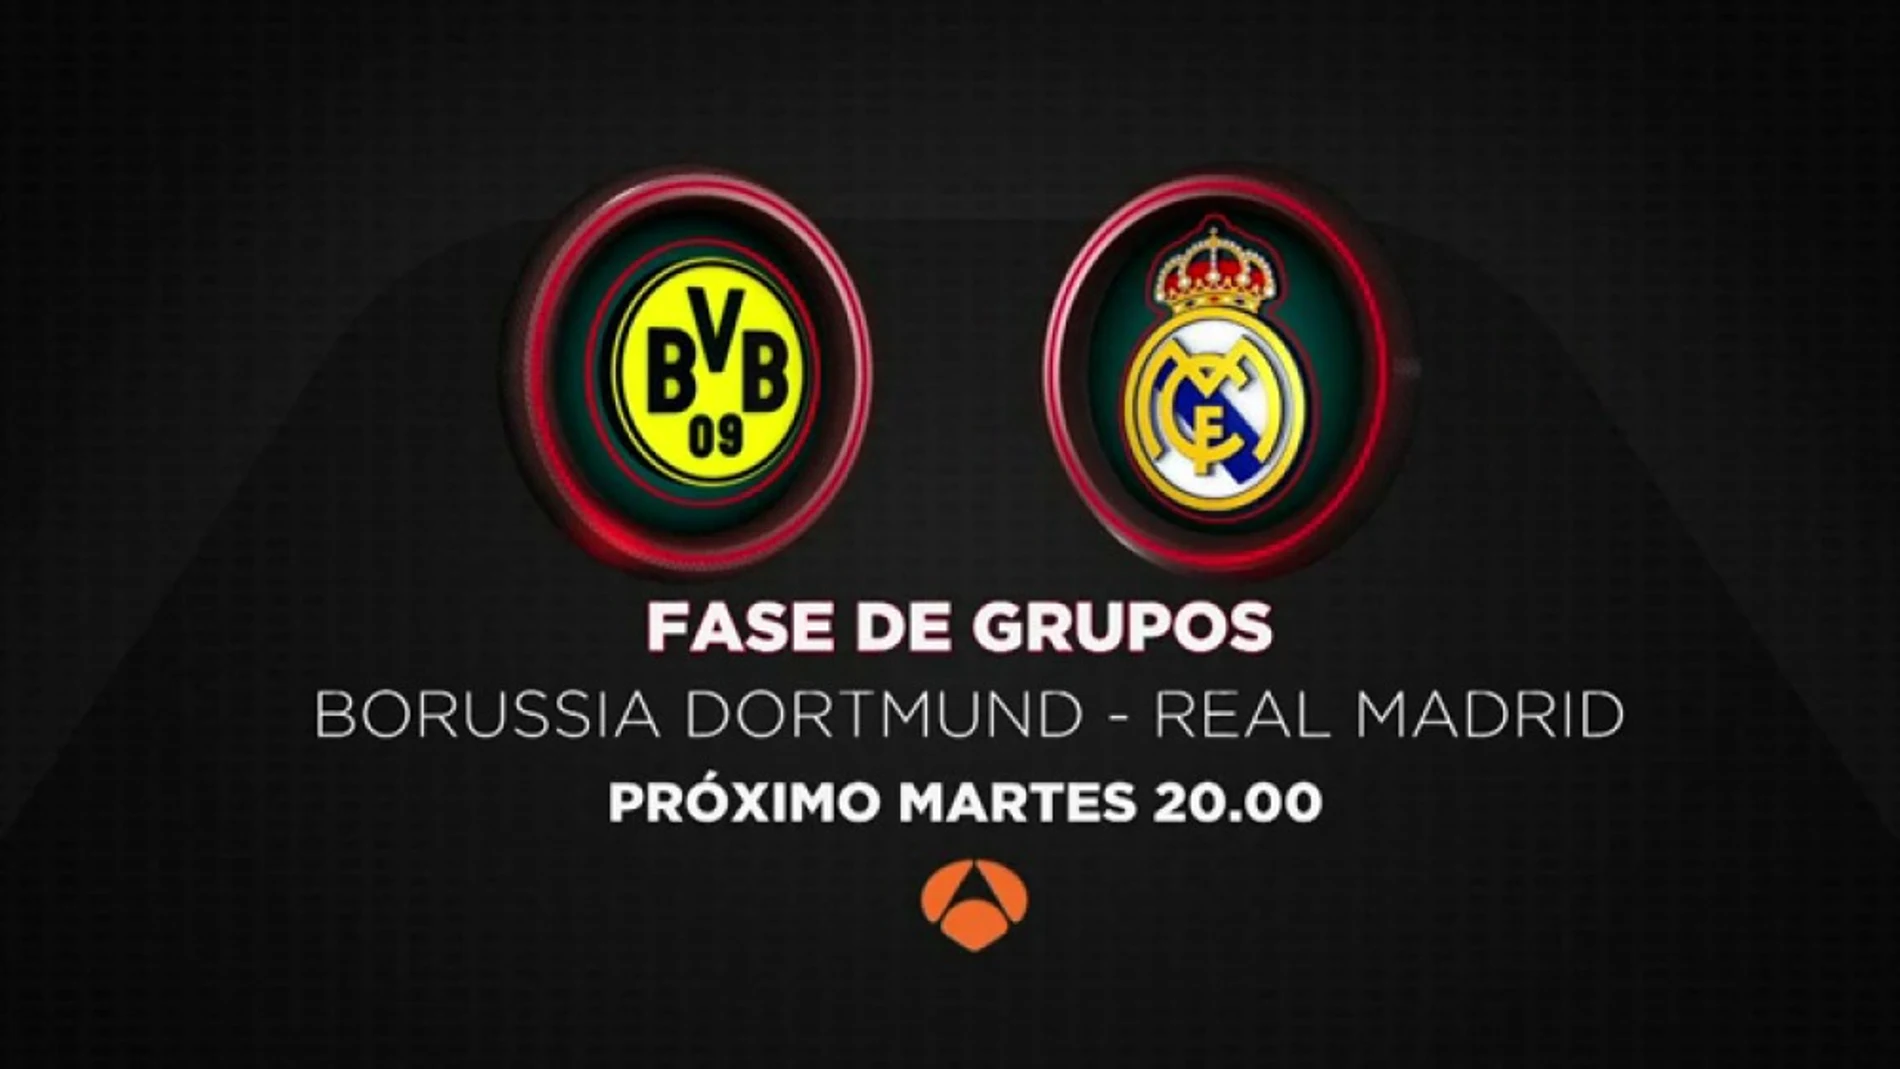 El Borussia Dortmund-Real Madrid, esta noche en Antena 3